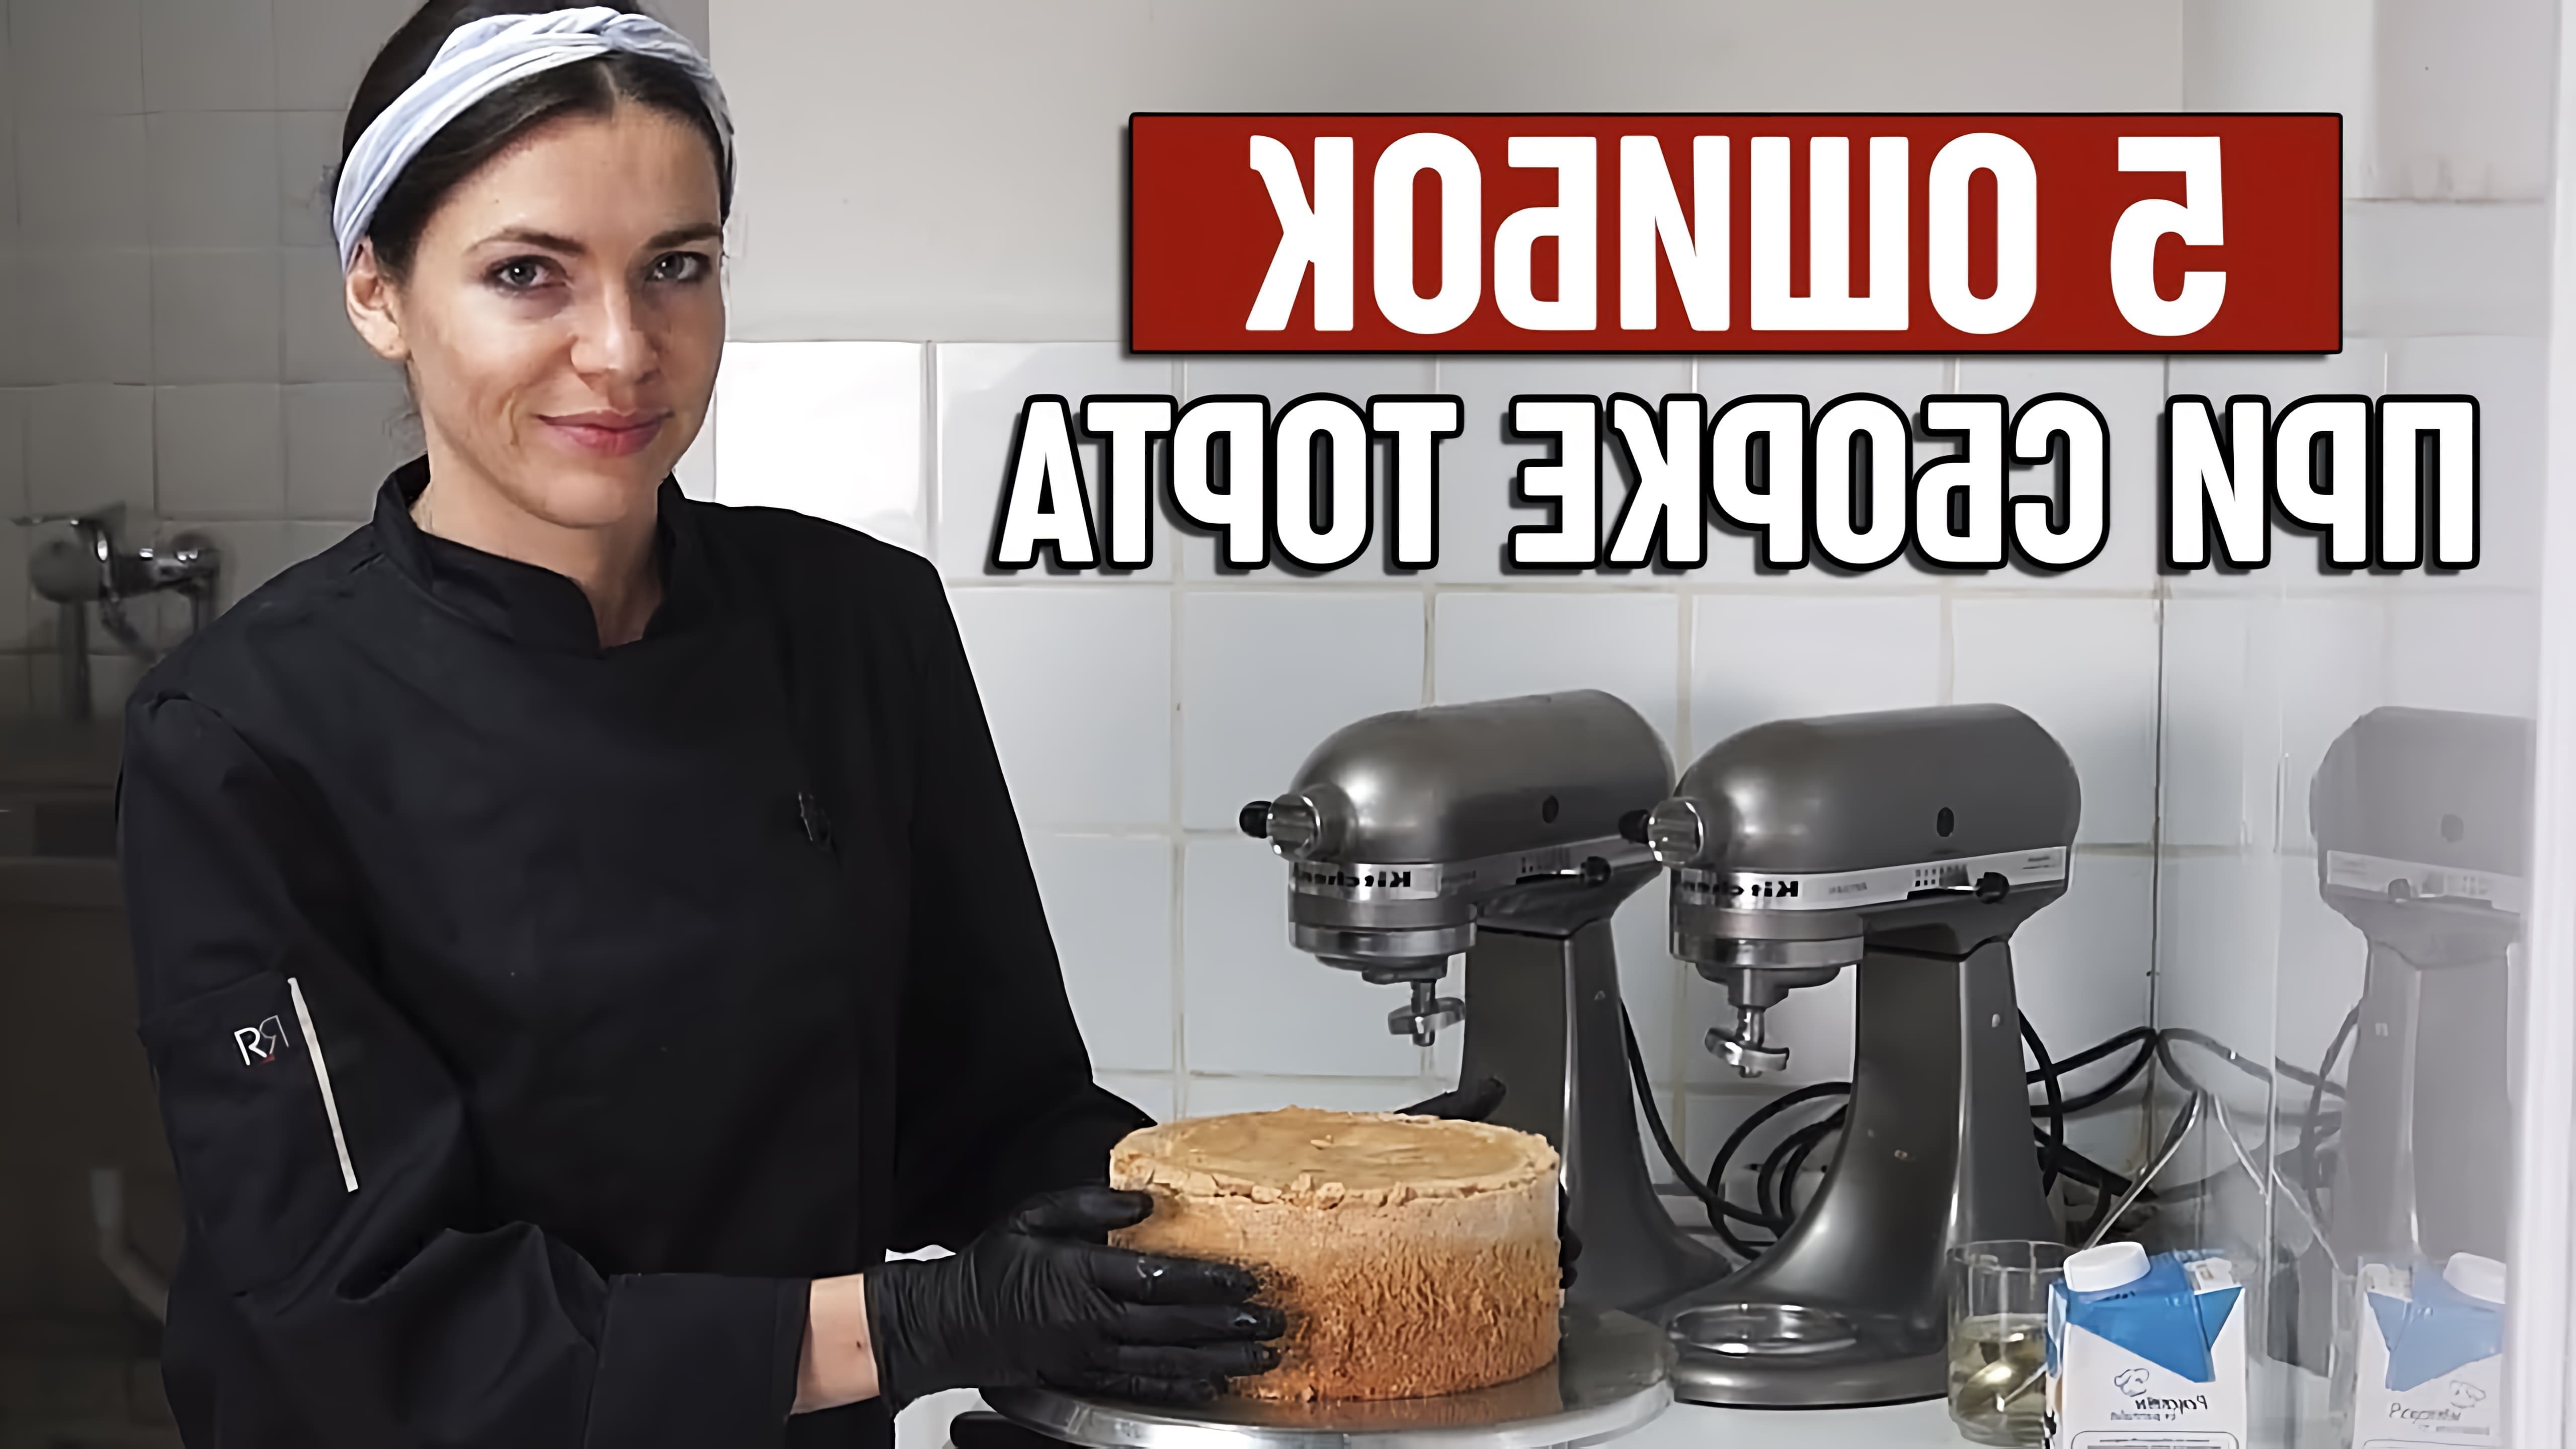 В этом видео кондитер Юлия Николенька рассказывает о пяти ошибках, которые могут возникнуть при сборке торта